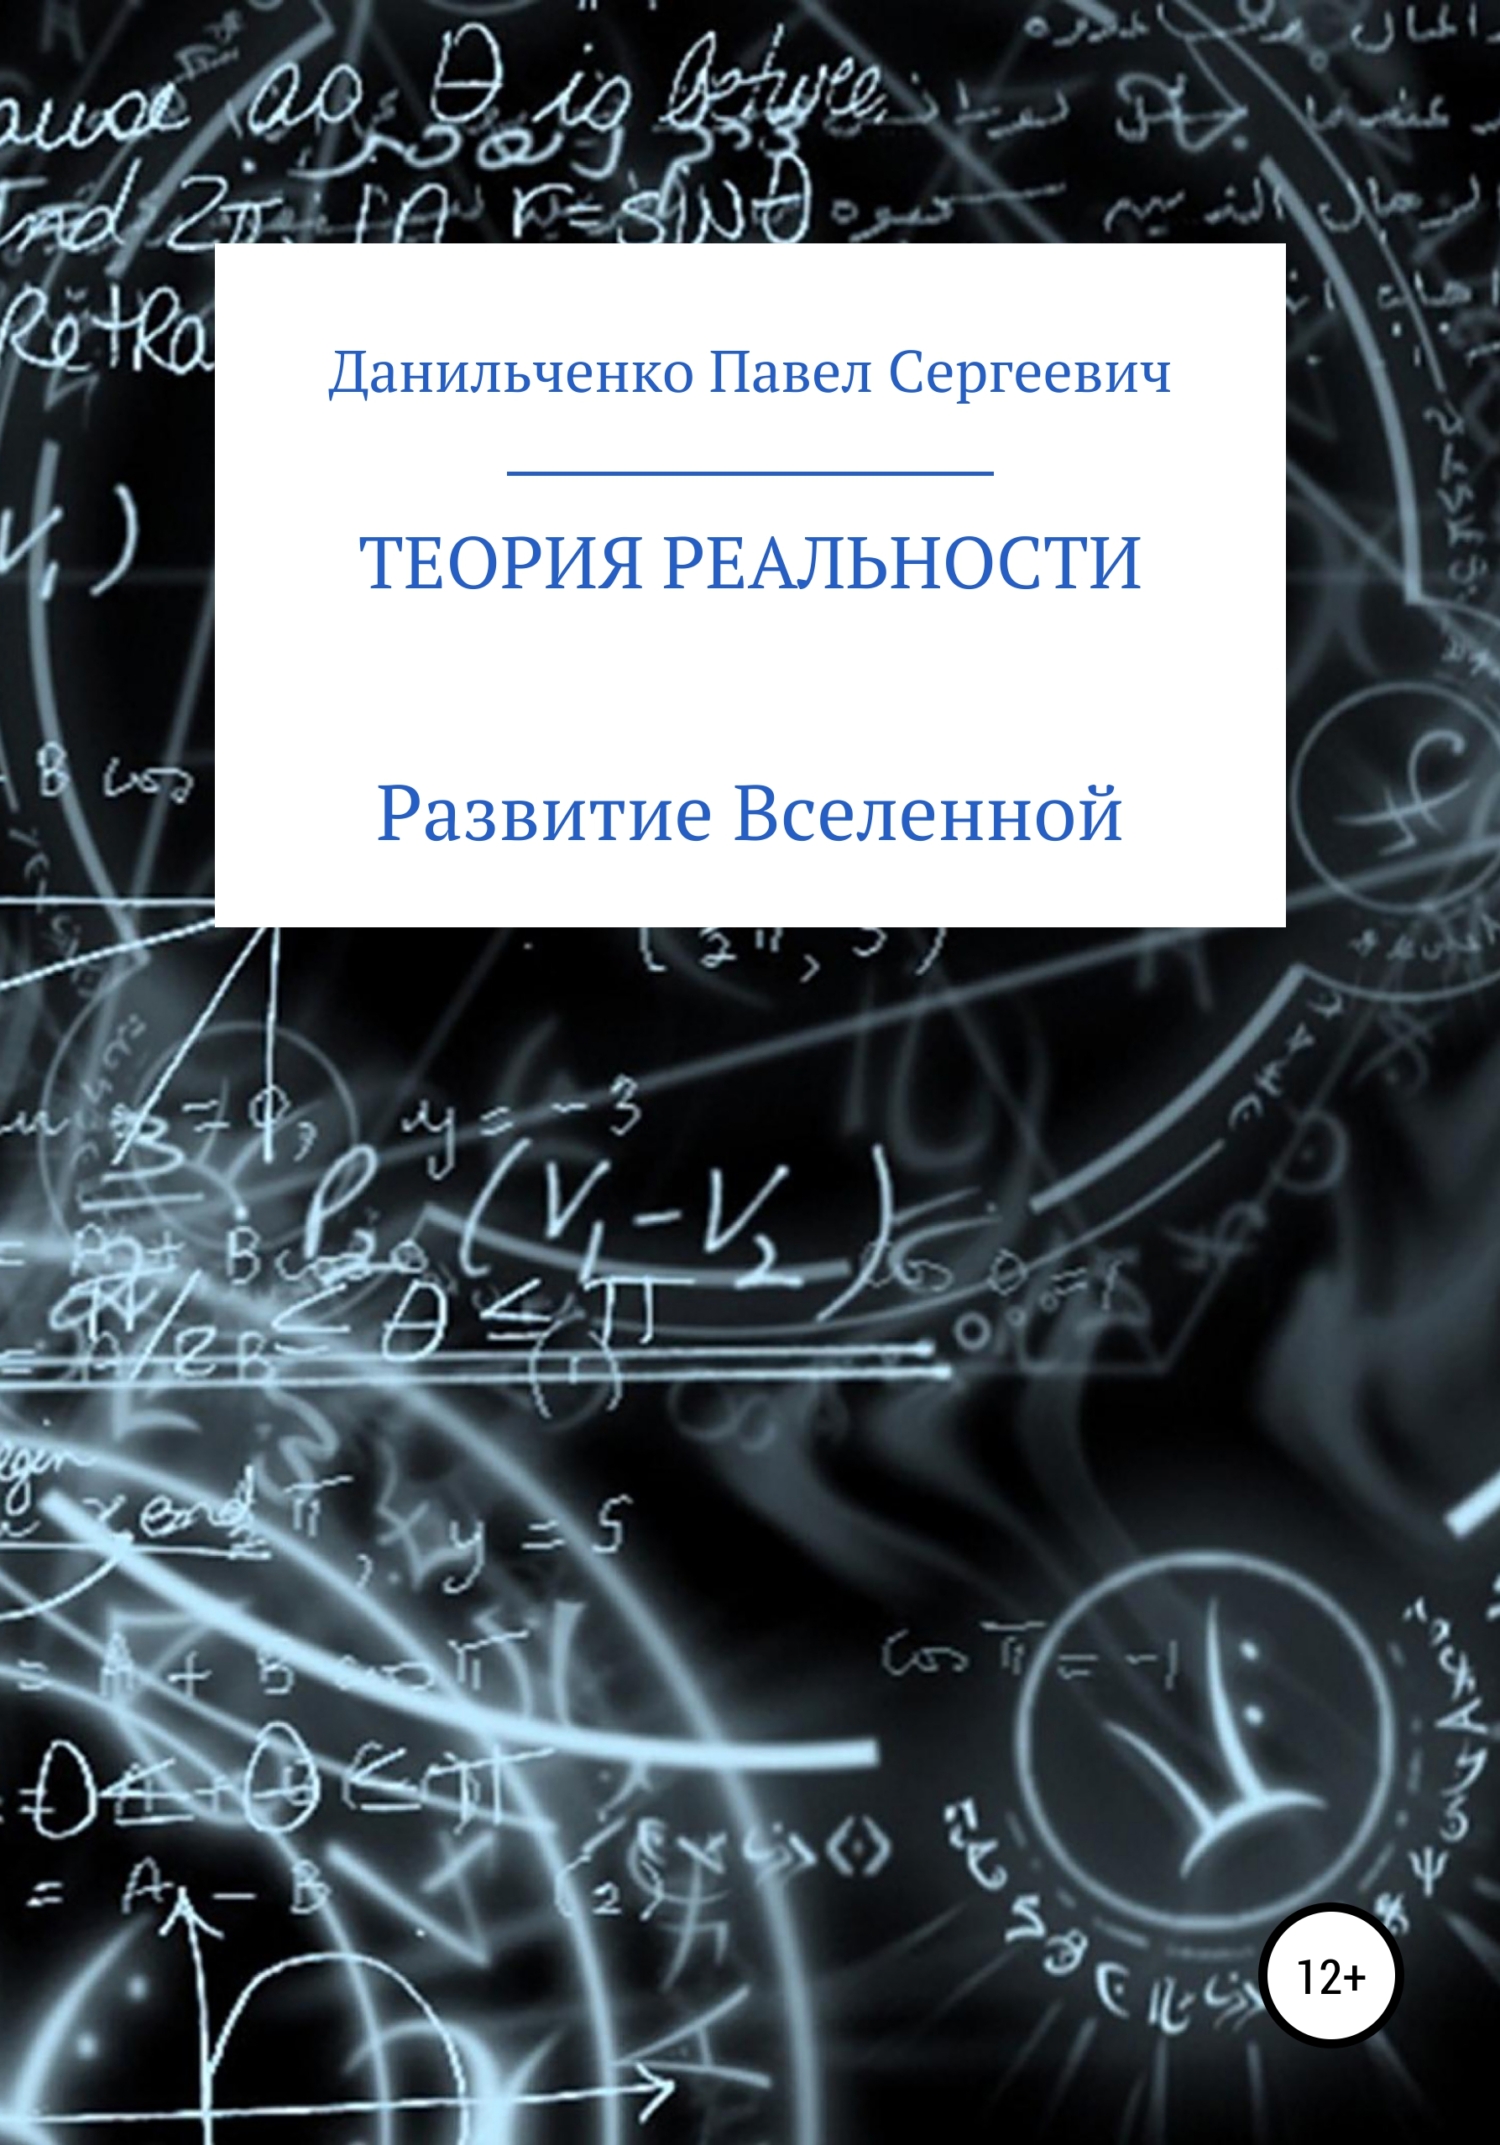 Теория реальности - Павел Сергеевич Данильченко